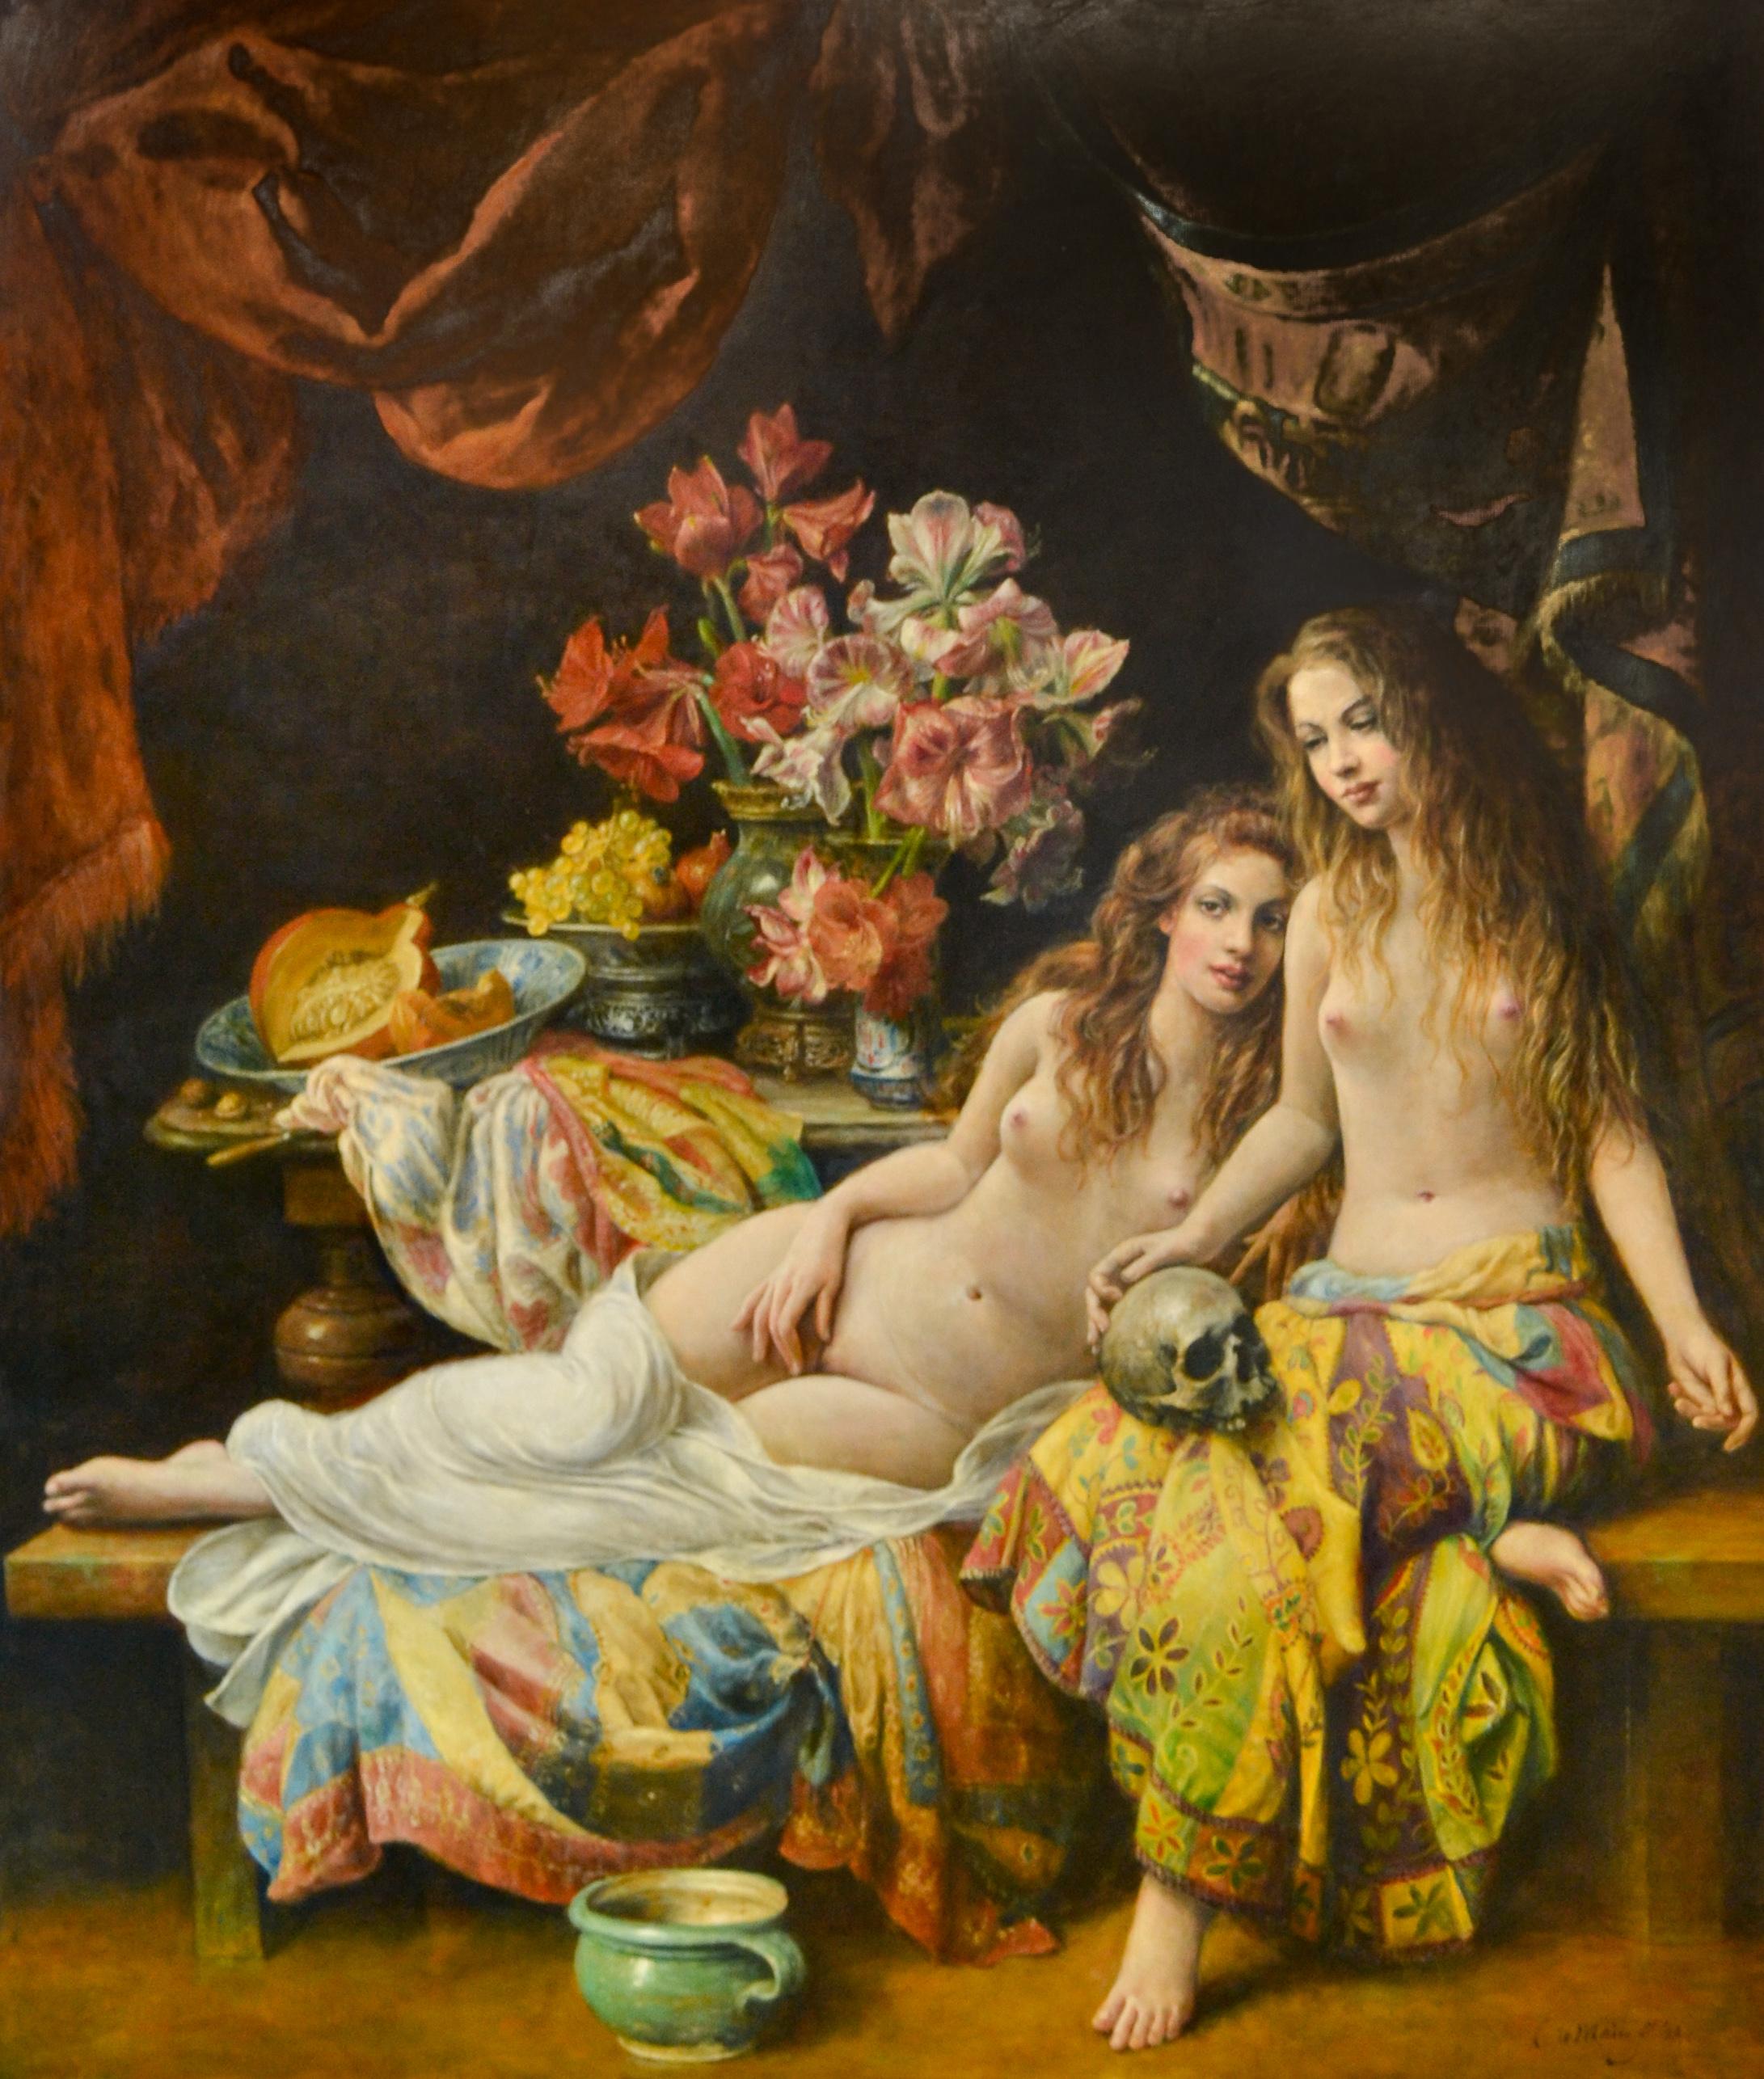 Deux femmes nues assises sur leur canapé - peinture à l'huile contemporaine du 21e siècle